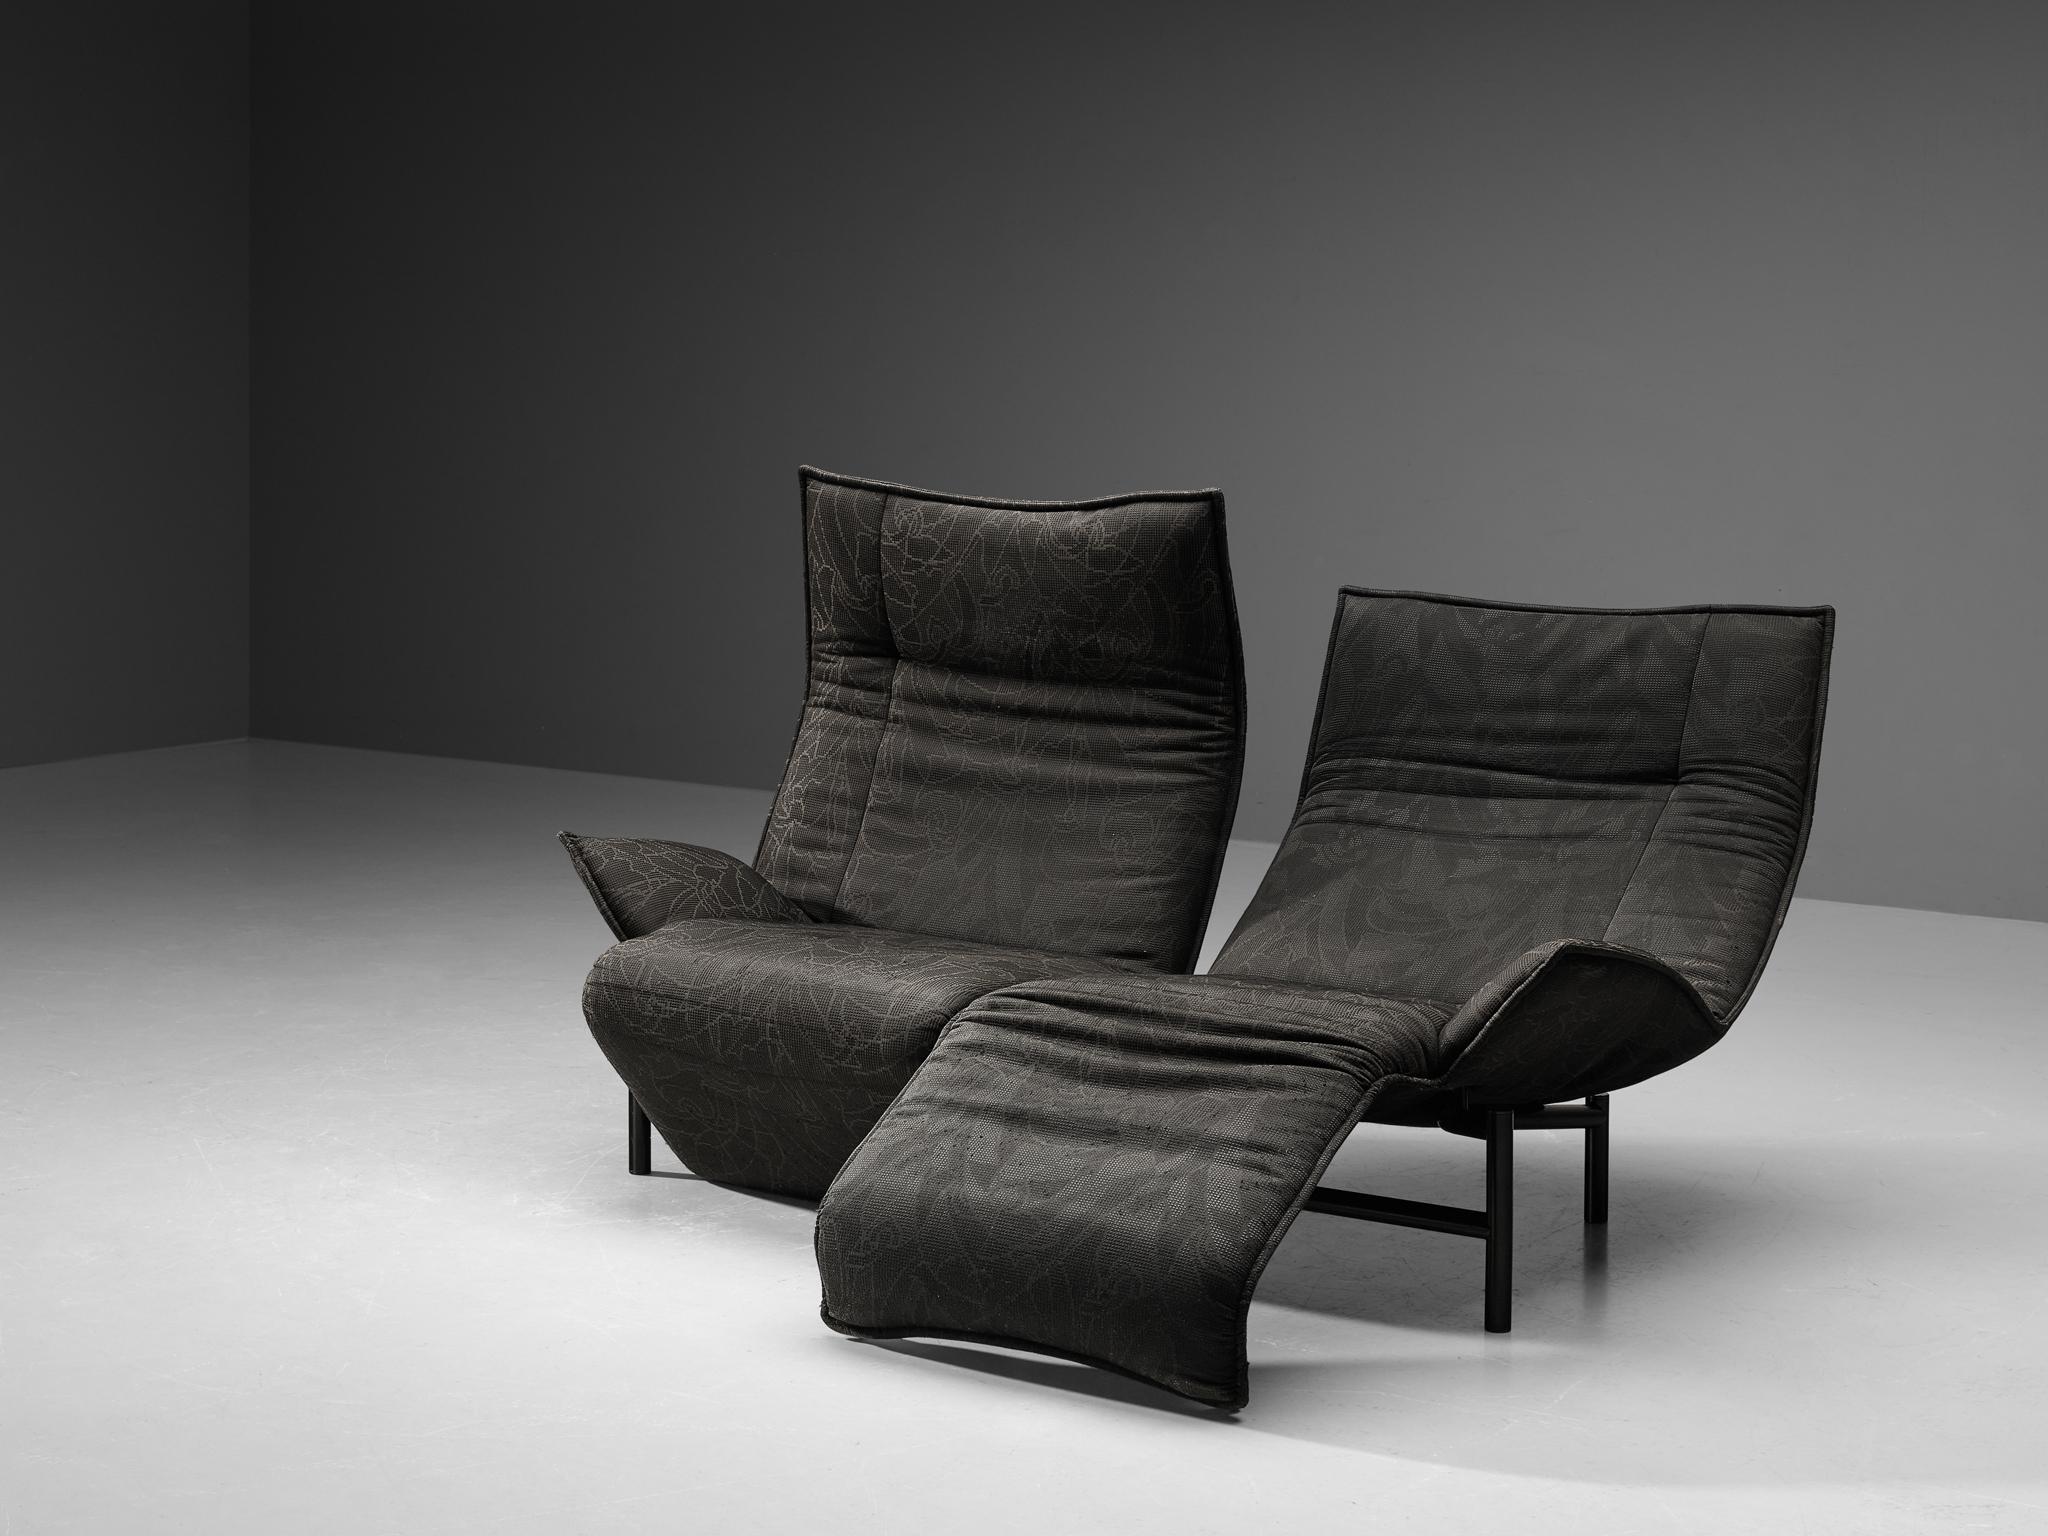 Vico Magistretti für Cassina, zweisitziges Sofa, Modell 